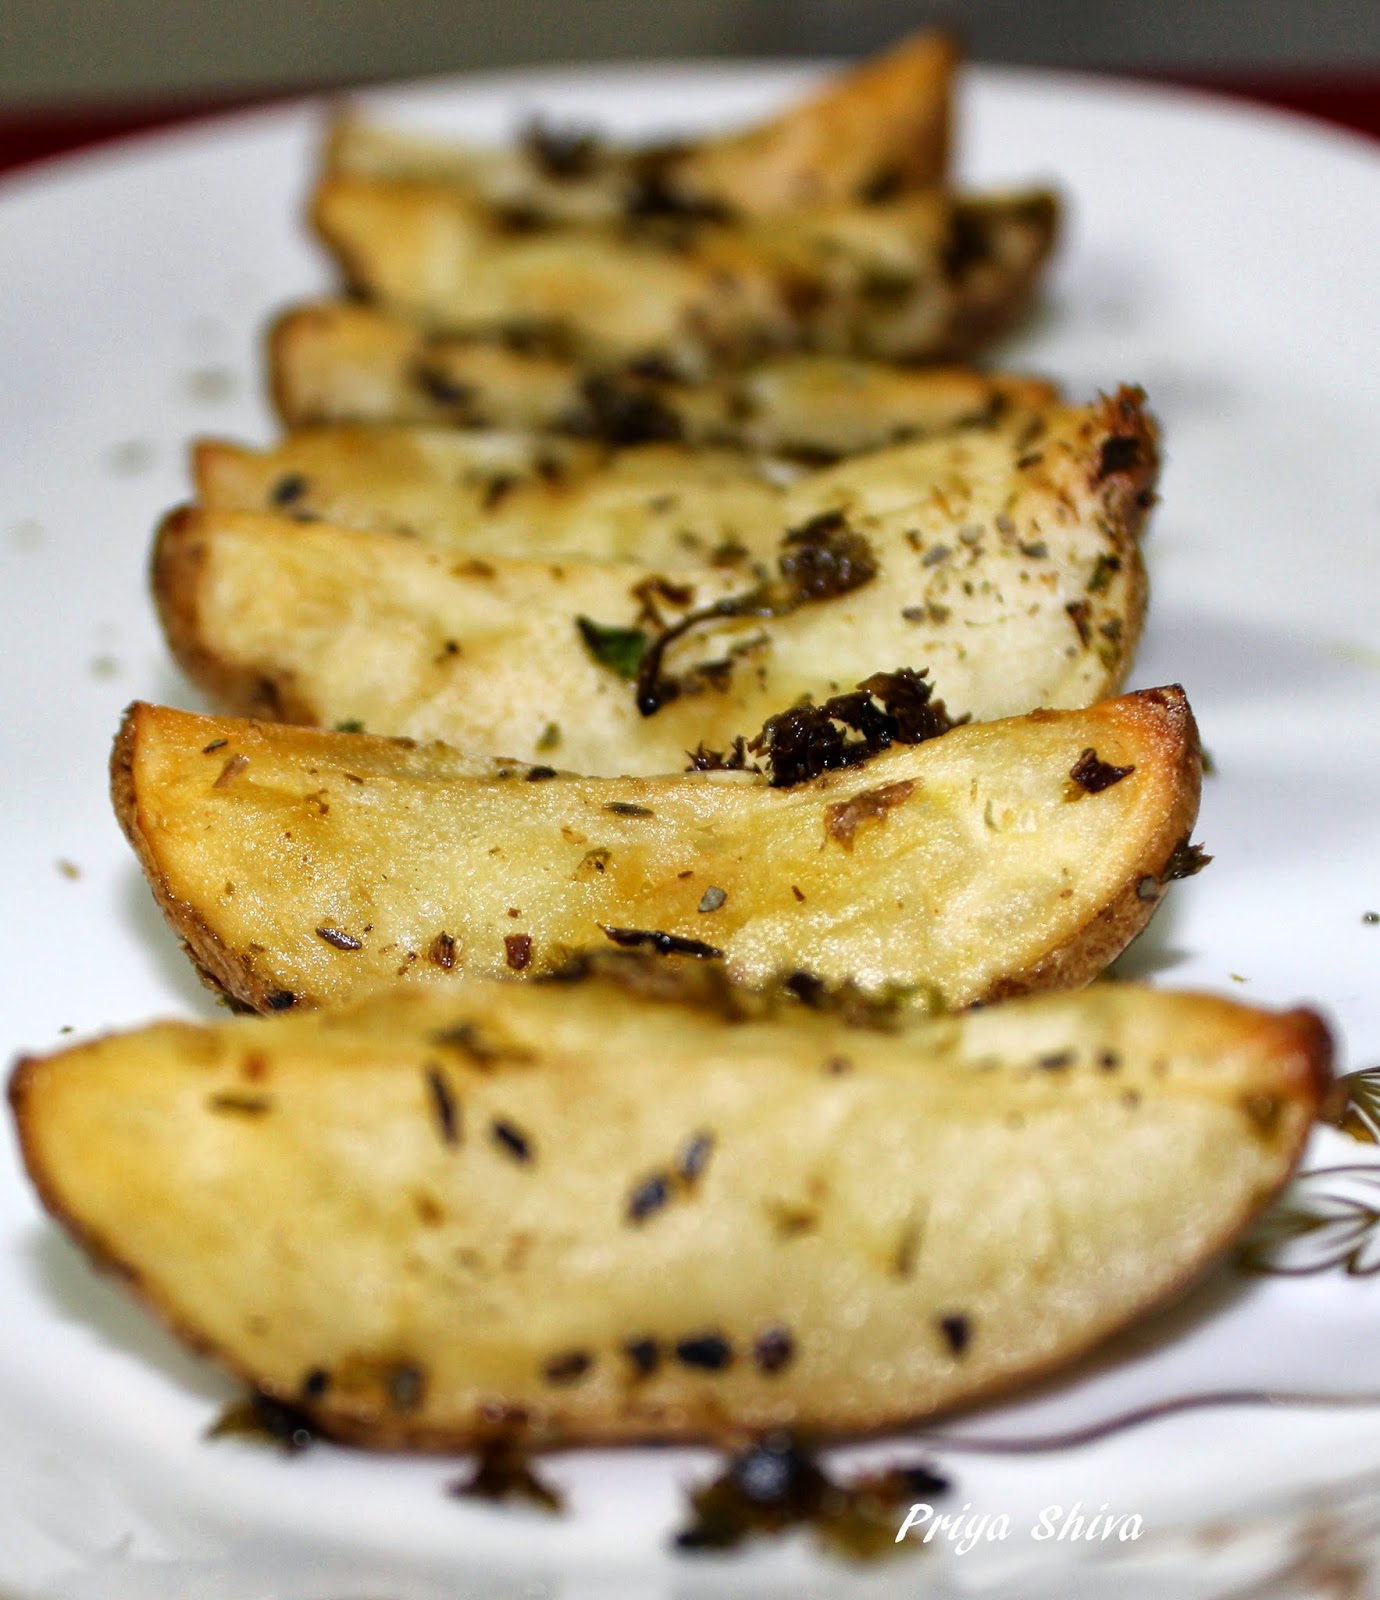 baked parsley potato